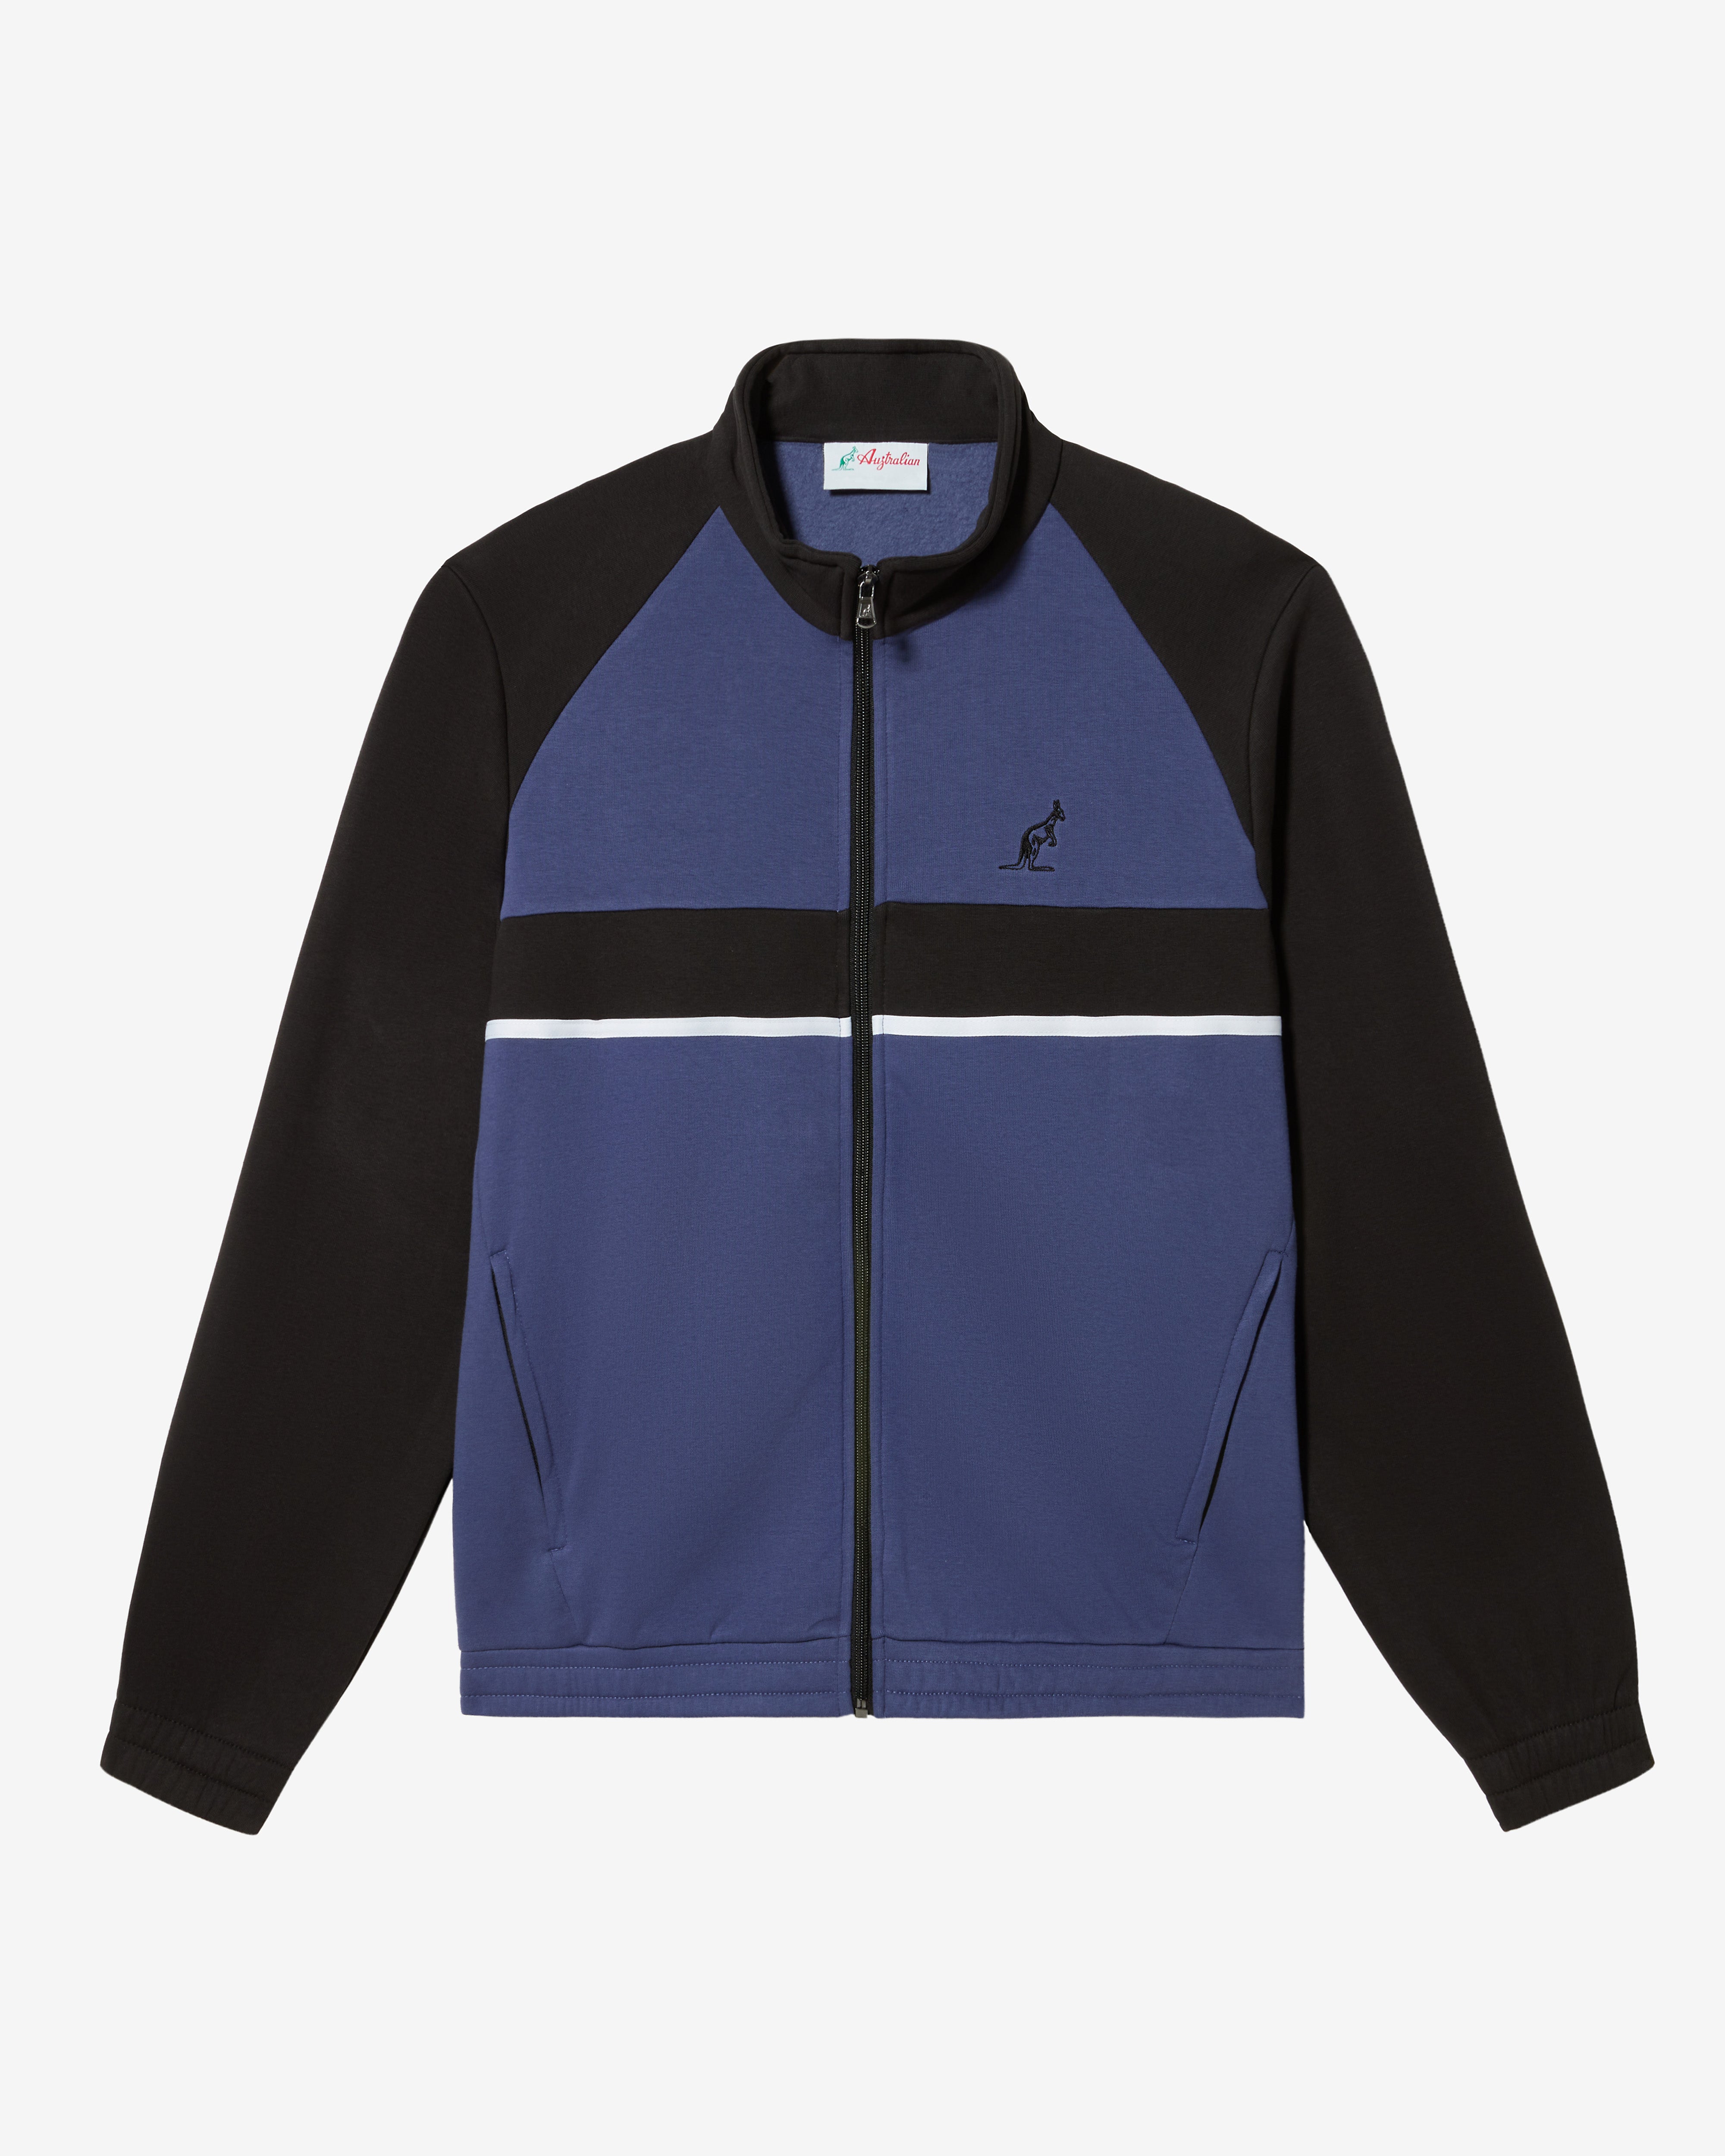 Classy Track Jacket: Australian Sportswear